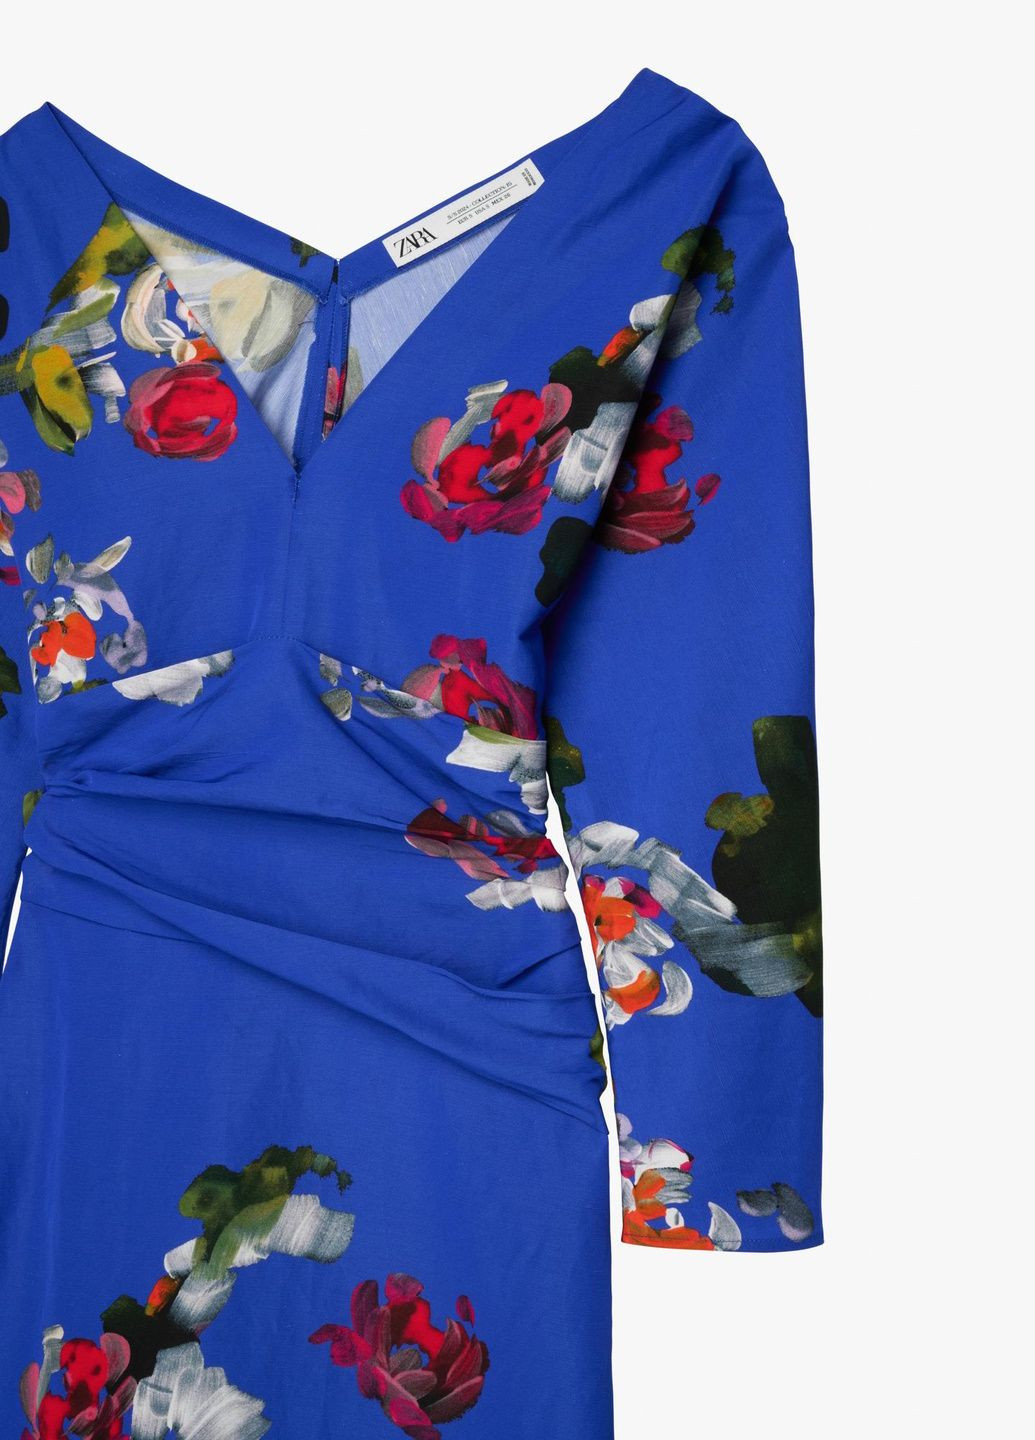 Синя святковий сукня Zara з квітковим принтом